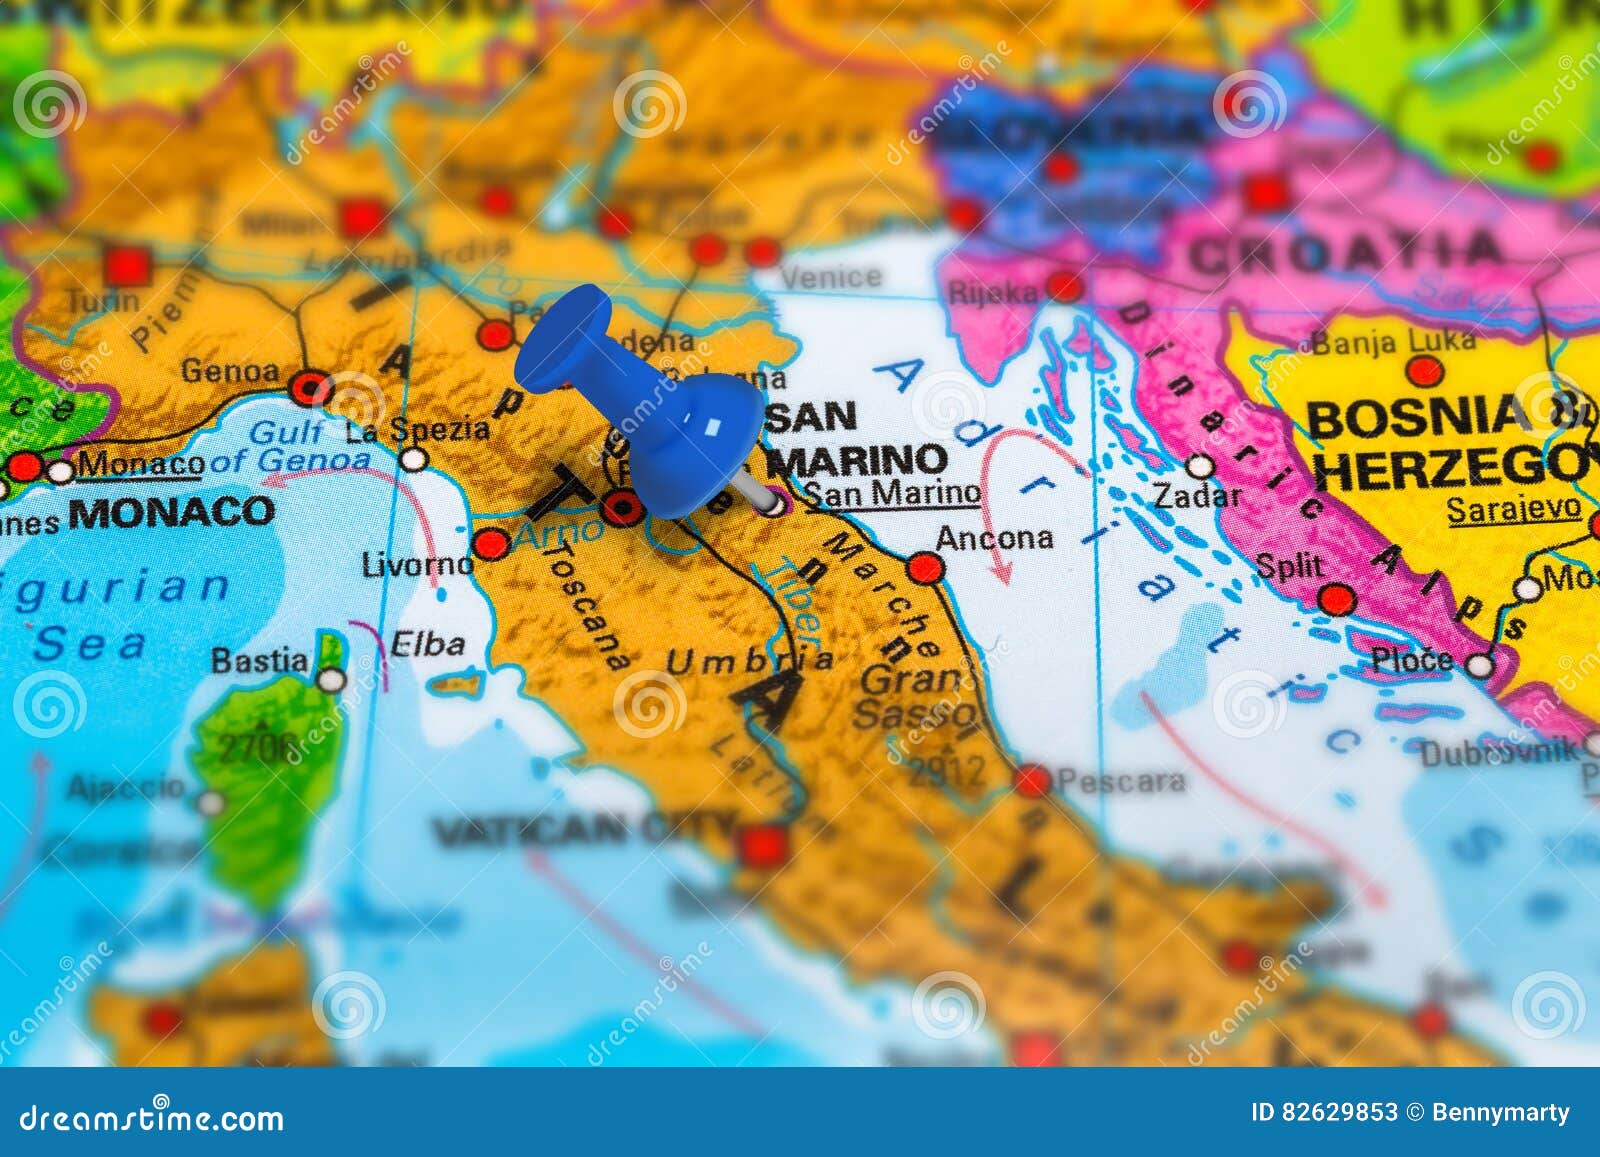 san marino italy map